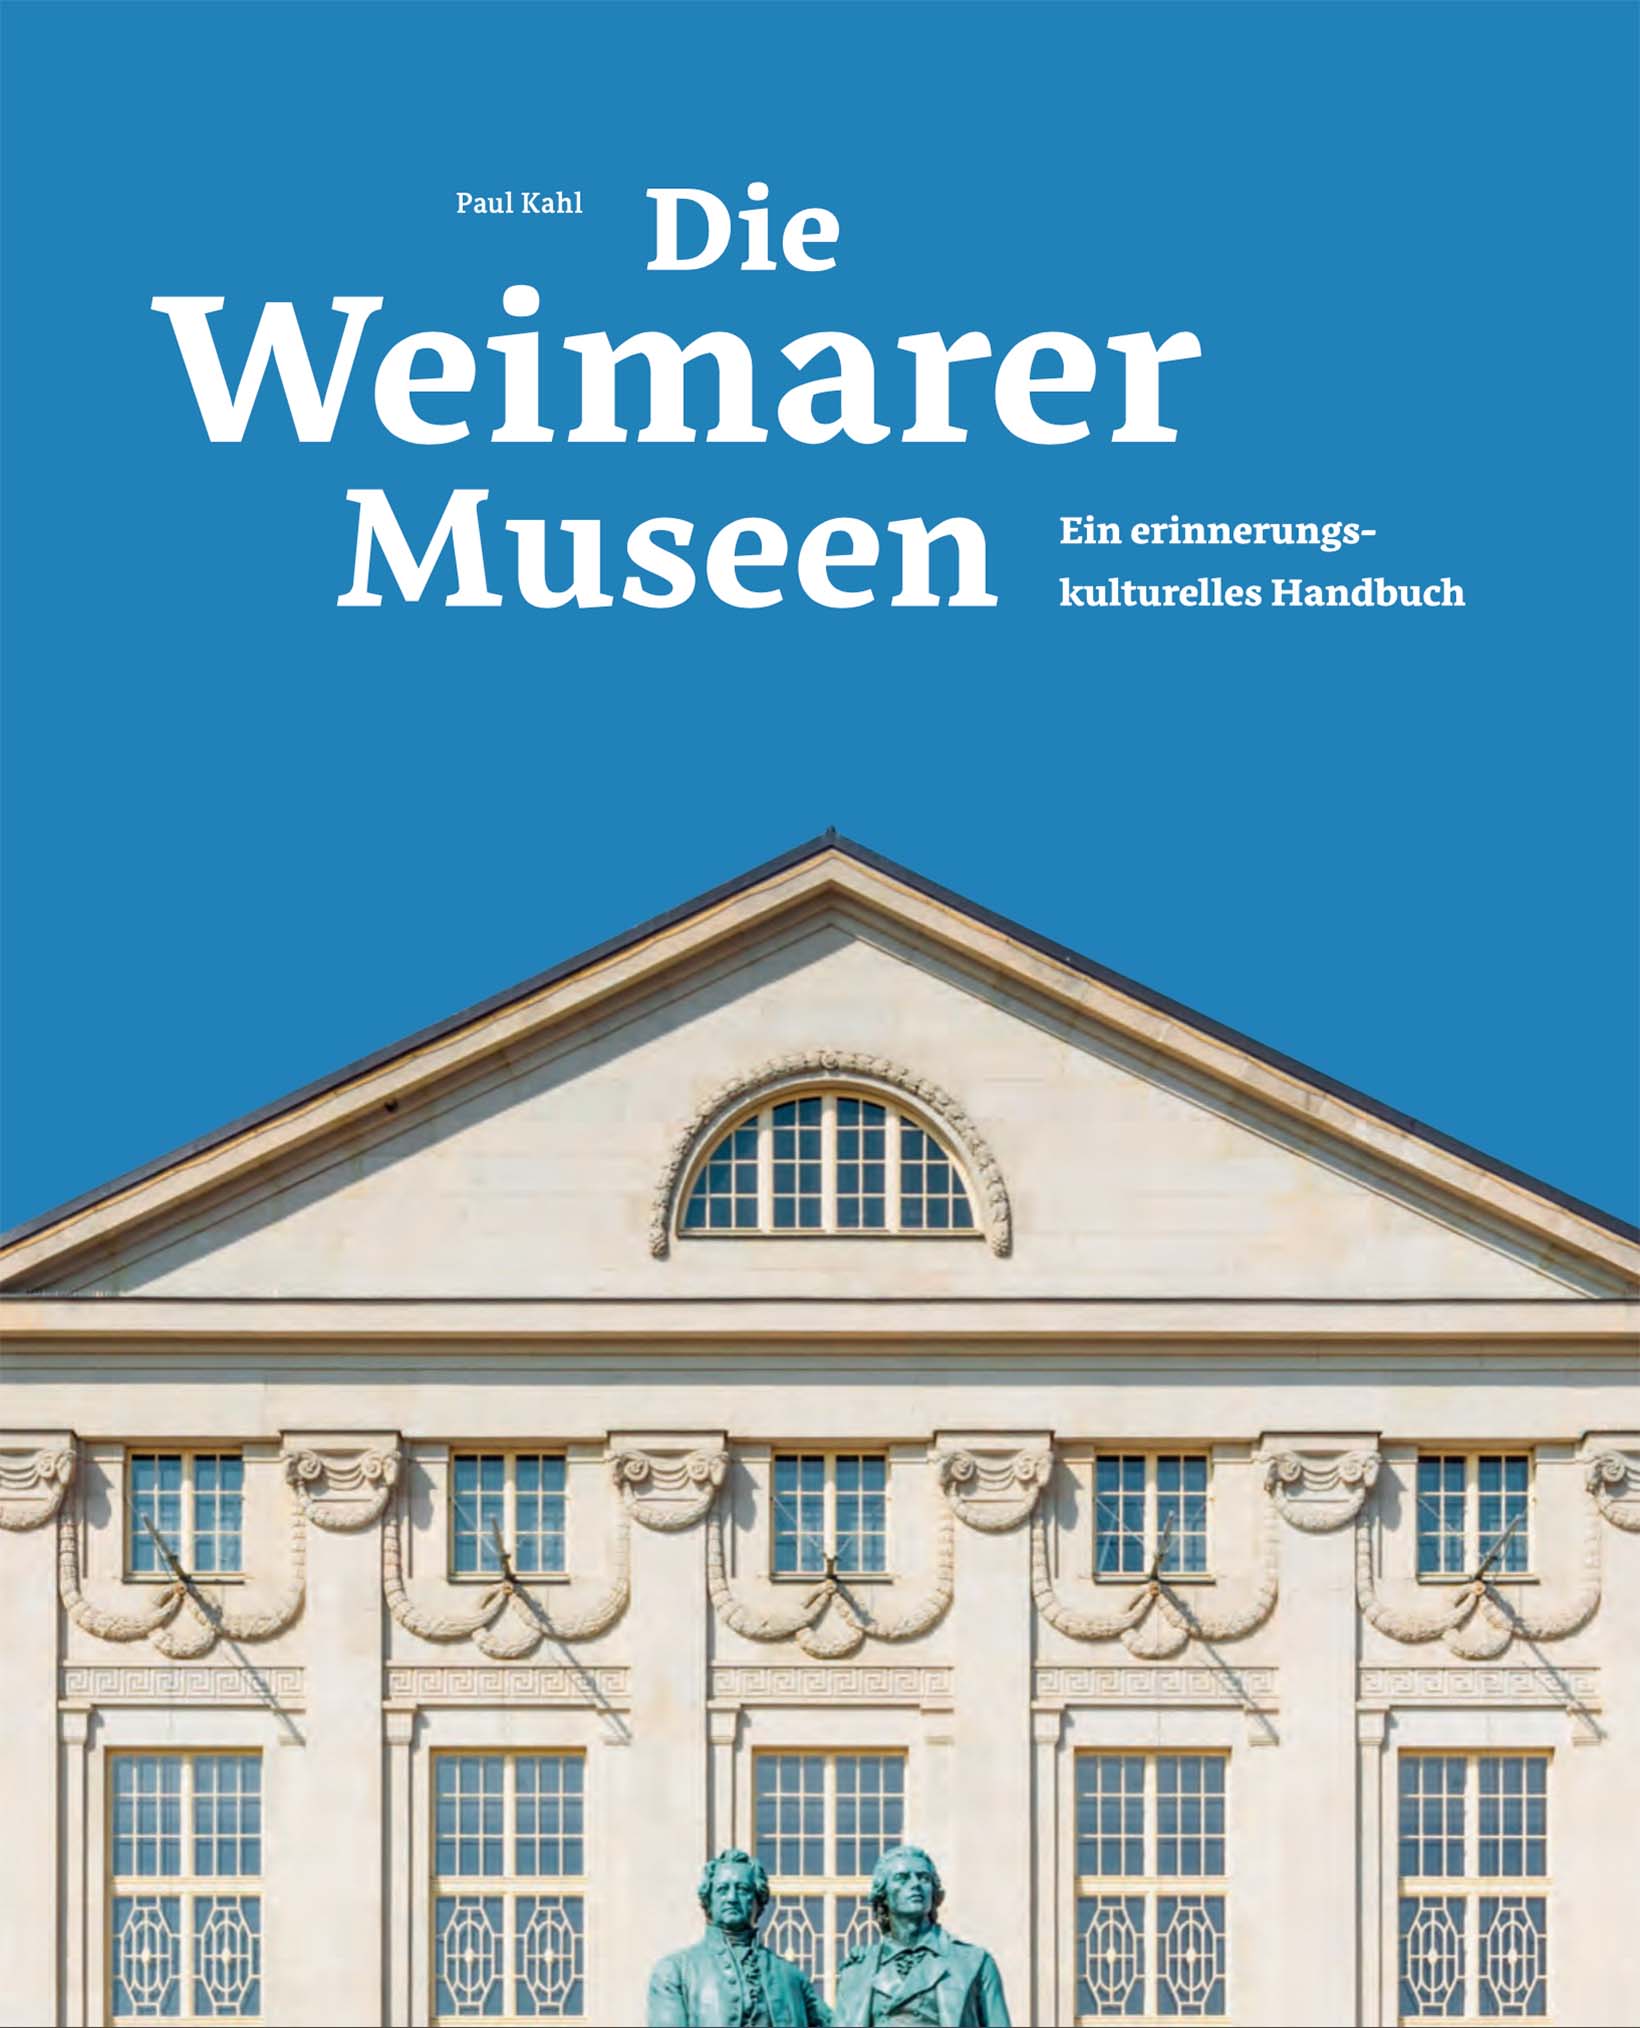 Bucheinband von »Die Weimarer Museen. Ein erinnerungskulturelles Handbuch«